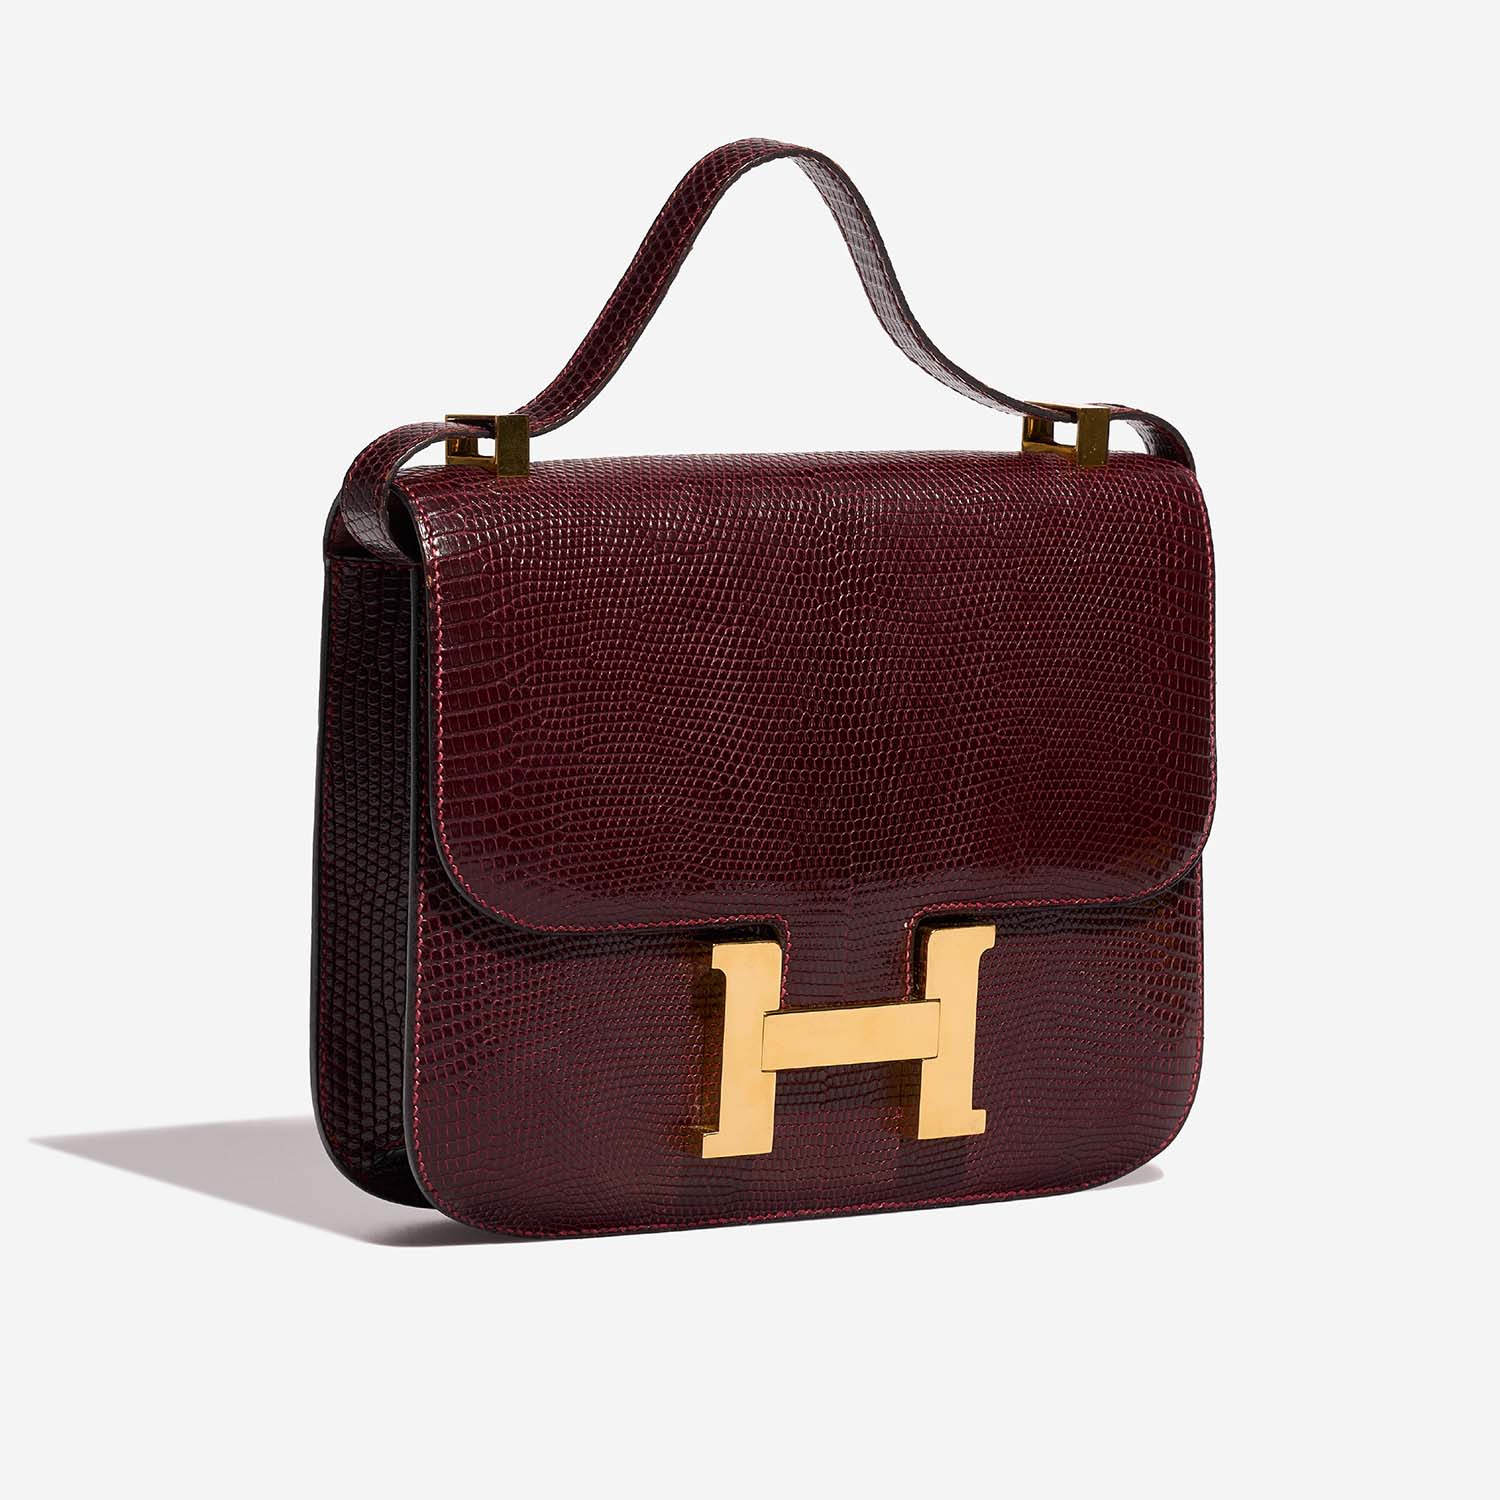 Hermès Constance 23 Bordeaux Side Front | Verkaufen Sie Ihre Designer-Tasche auf Saclab.com